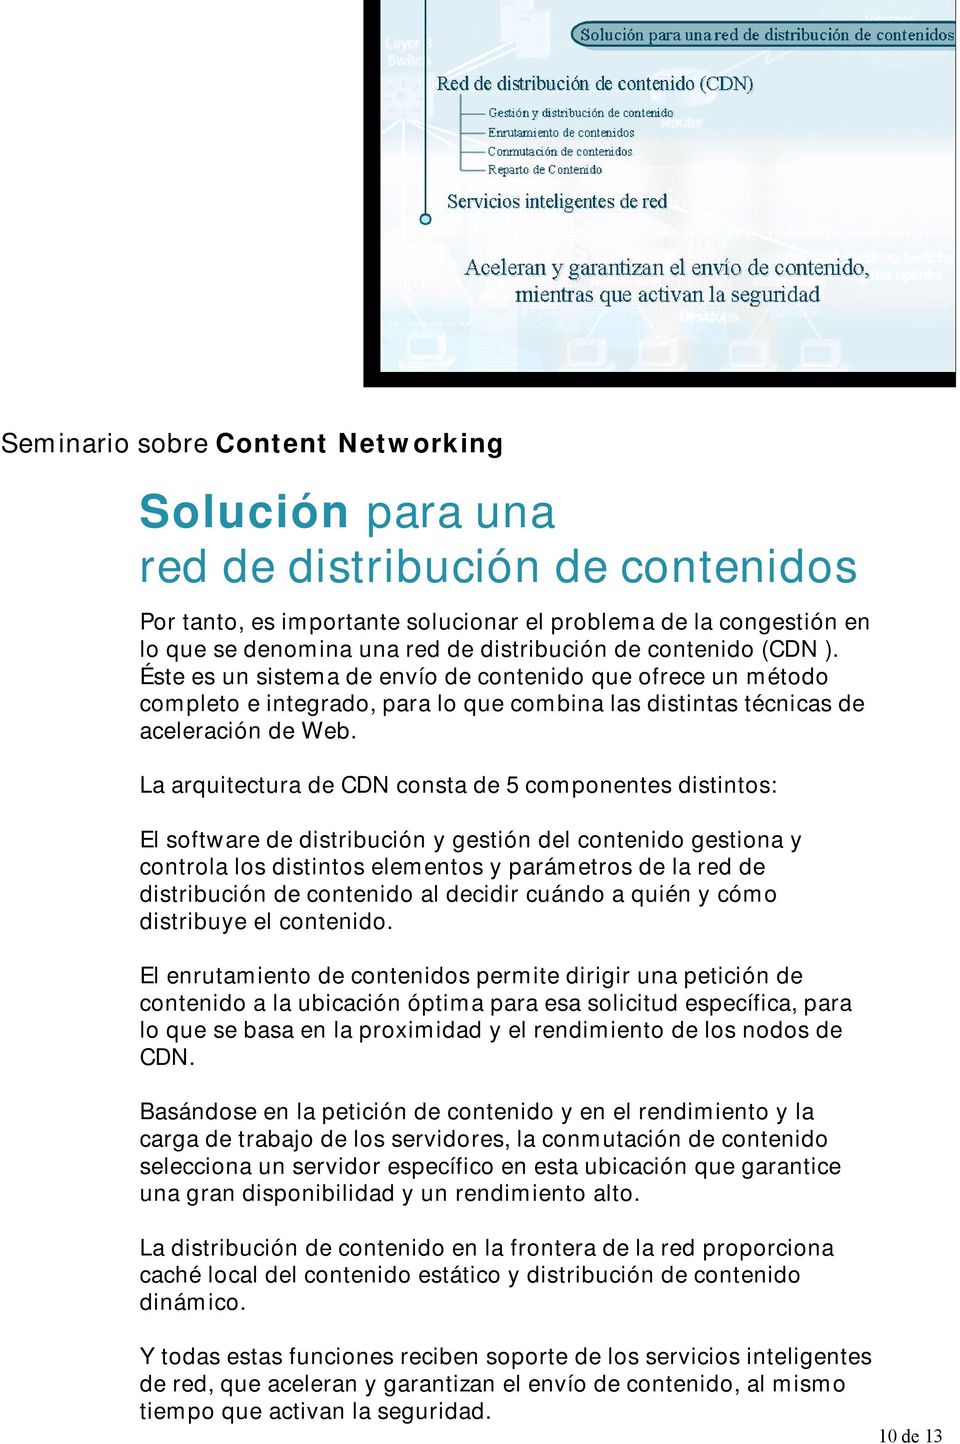 La arquitectura de CDN consta de 5 componentes distintos: El software de distribución y gestión del contenido gestiona y controla los distintos elementos y parámetros de la red de distribución de